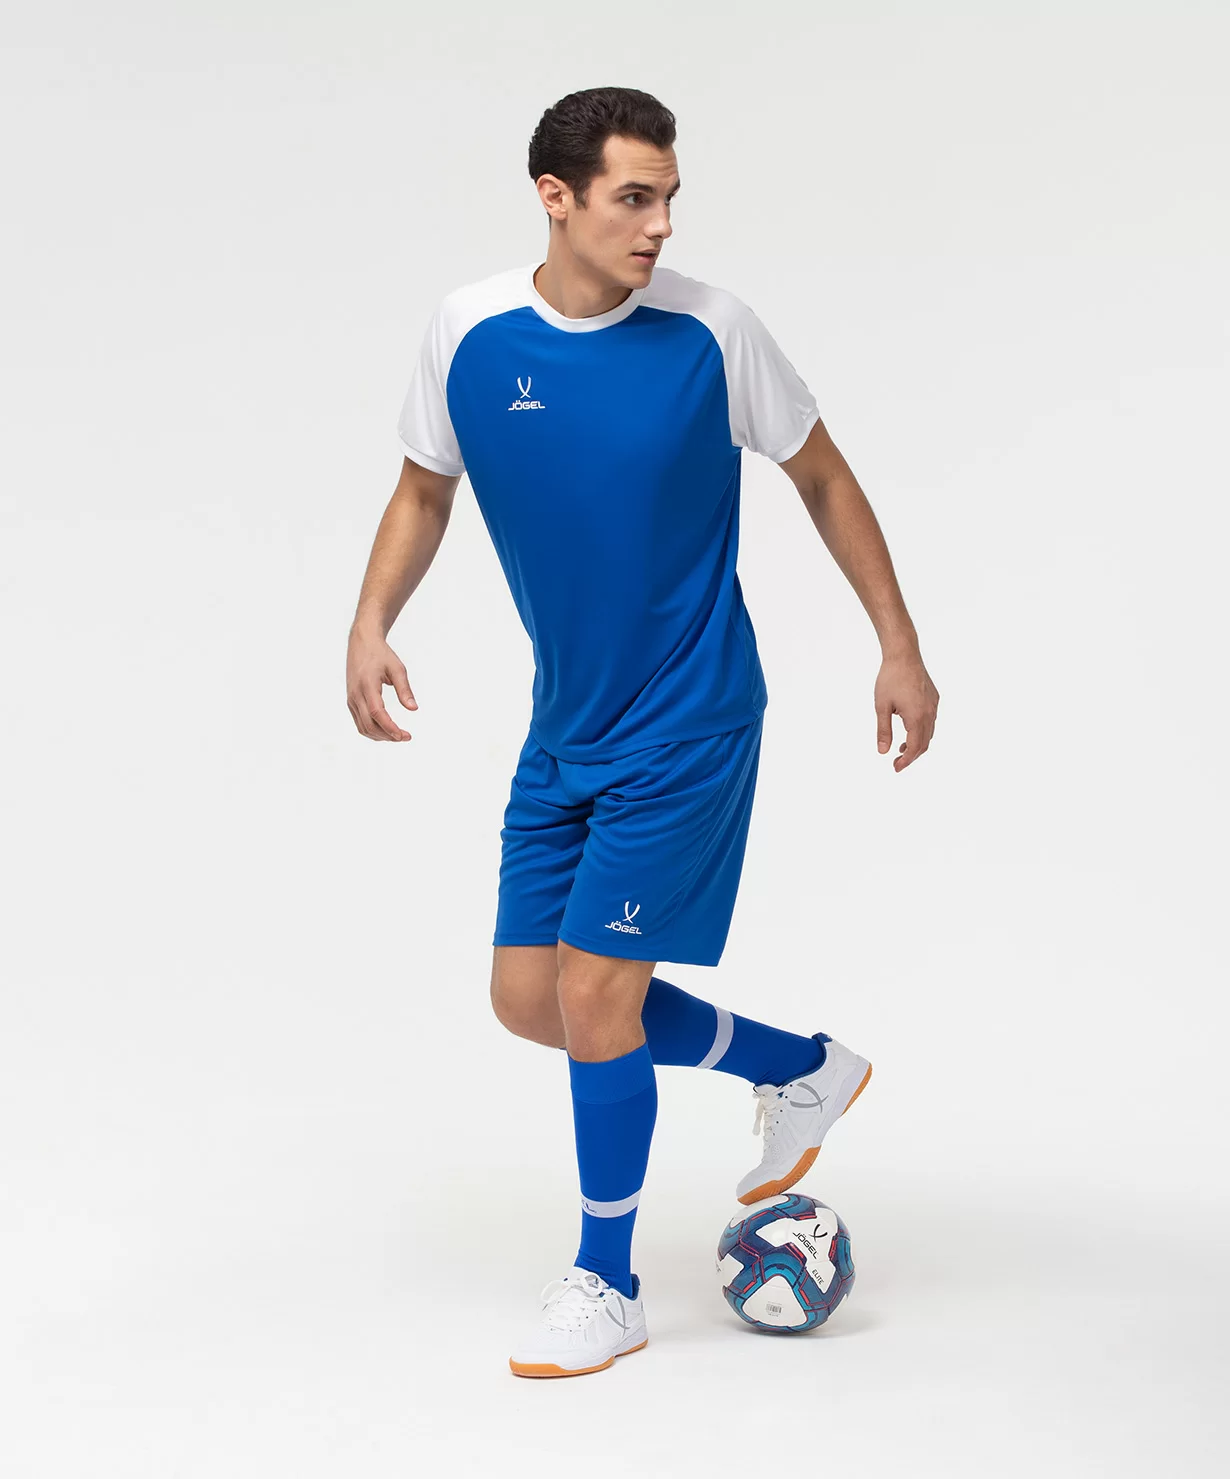 Реальное фото Футболка игровая CAMP Reglan Jersey, синий/белый Jögel от магазина Спортев